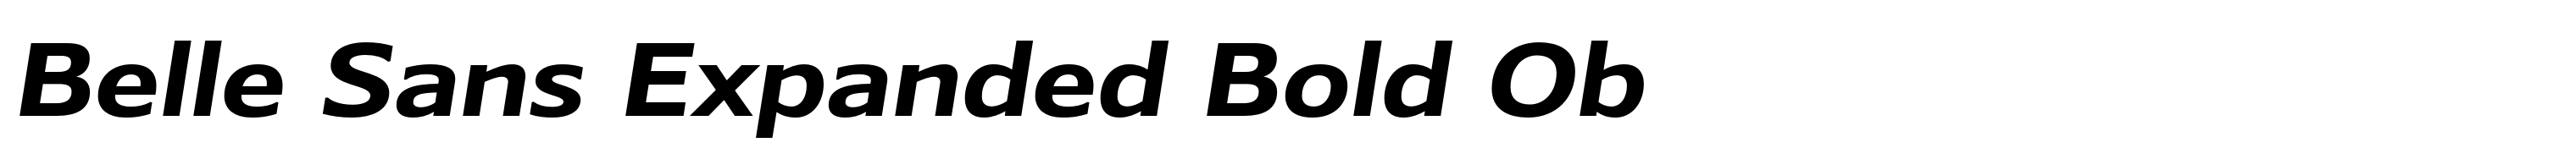 Belle Sans Expanded Bold Ob